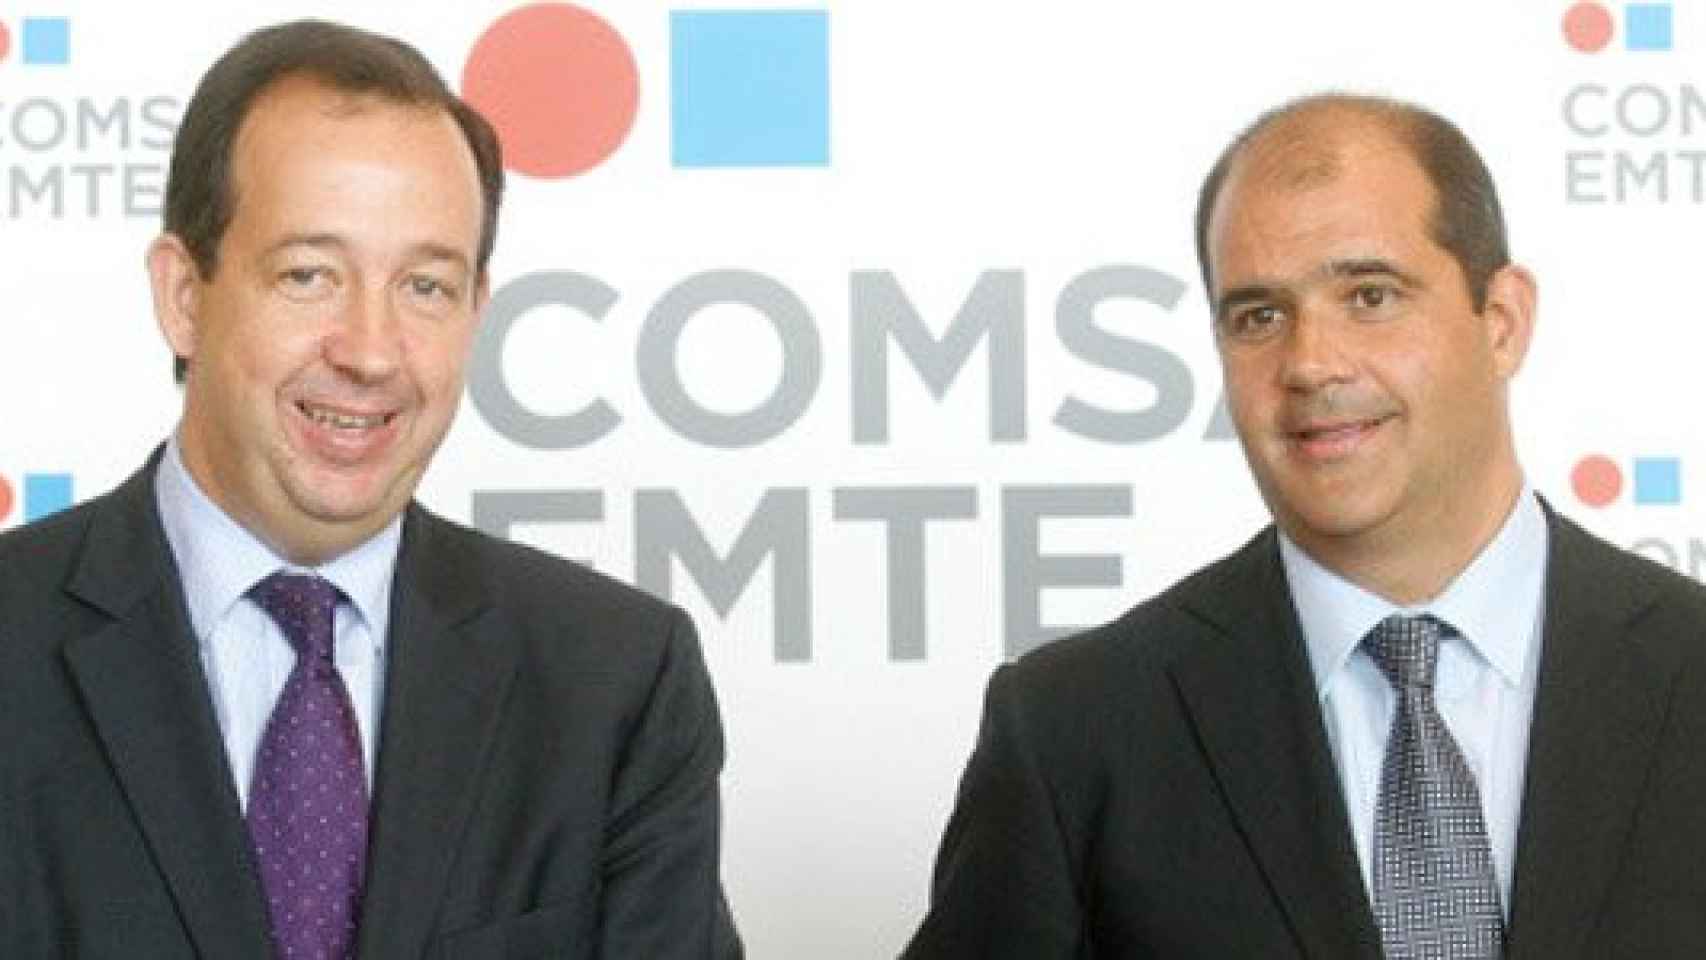 Jorge Miarnau (izquierda) y Carles Sumarroca Claverol (derecha) en una imagen de archivo tras el anuncio de la fusión de Comsa Emte